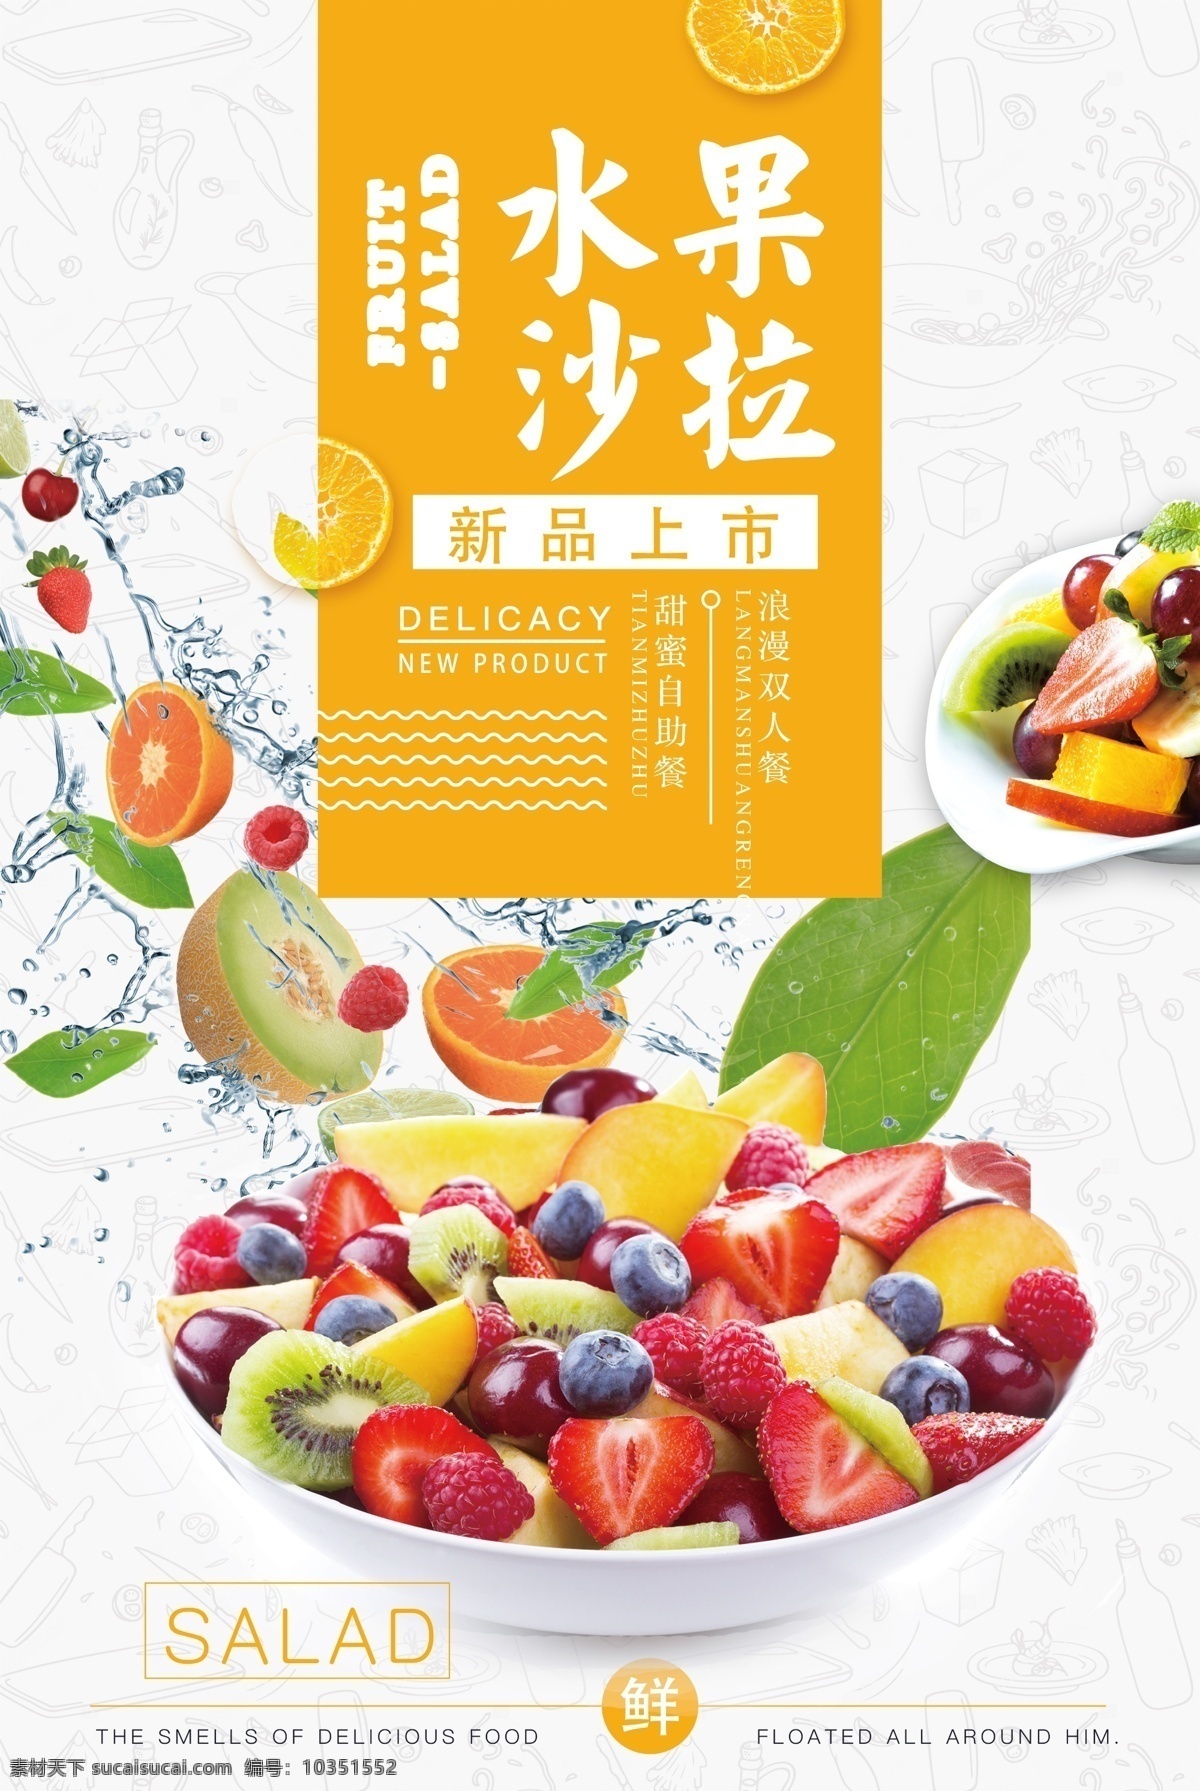 水果 沙拉 美食 活动 促销 宣传海报 水果沙拉 宣传 海报 饮料 饮品 甜品 类